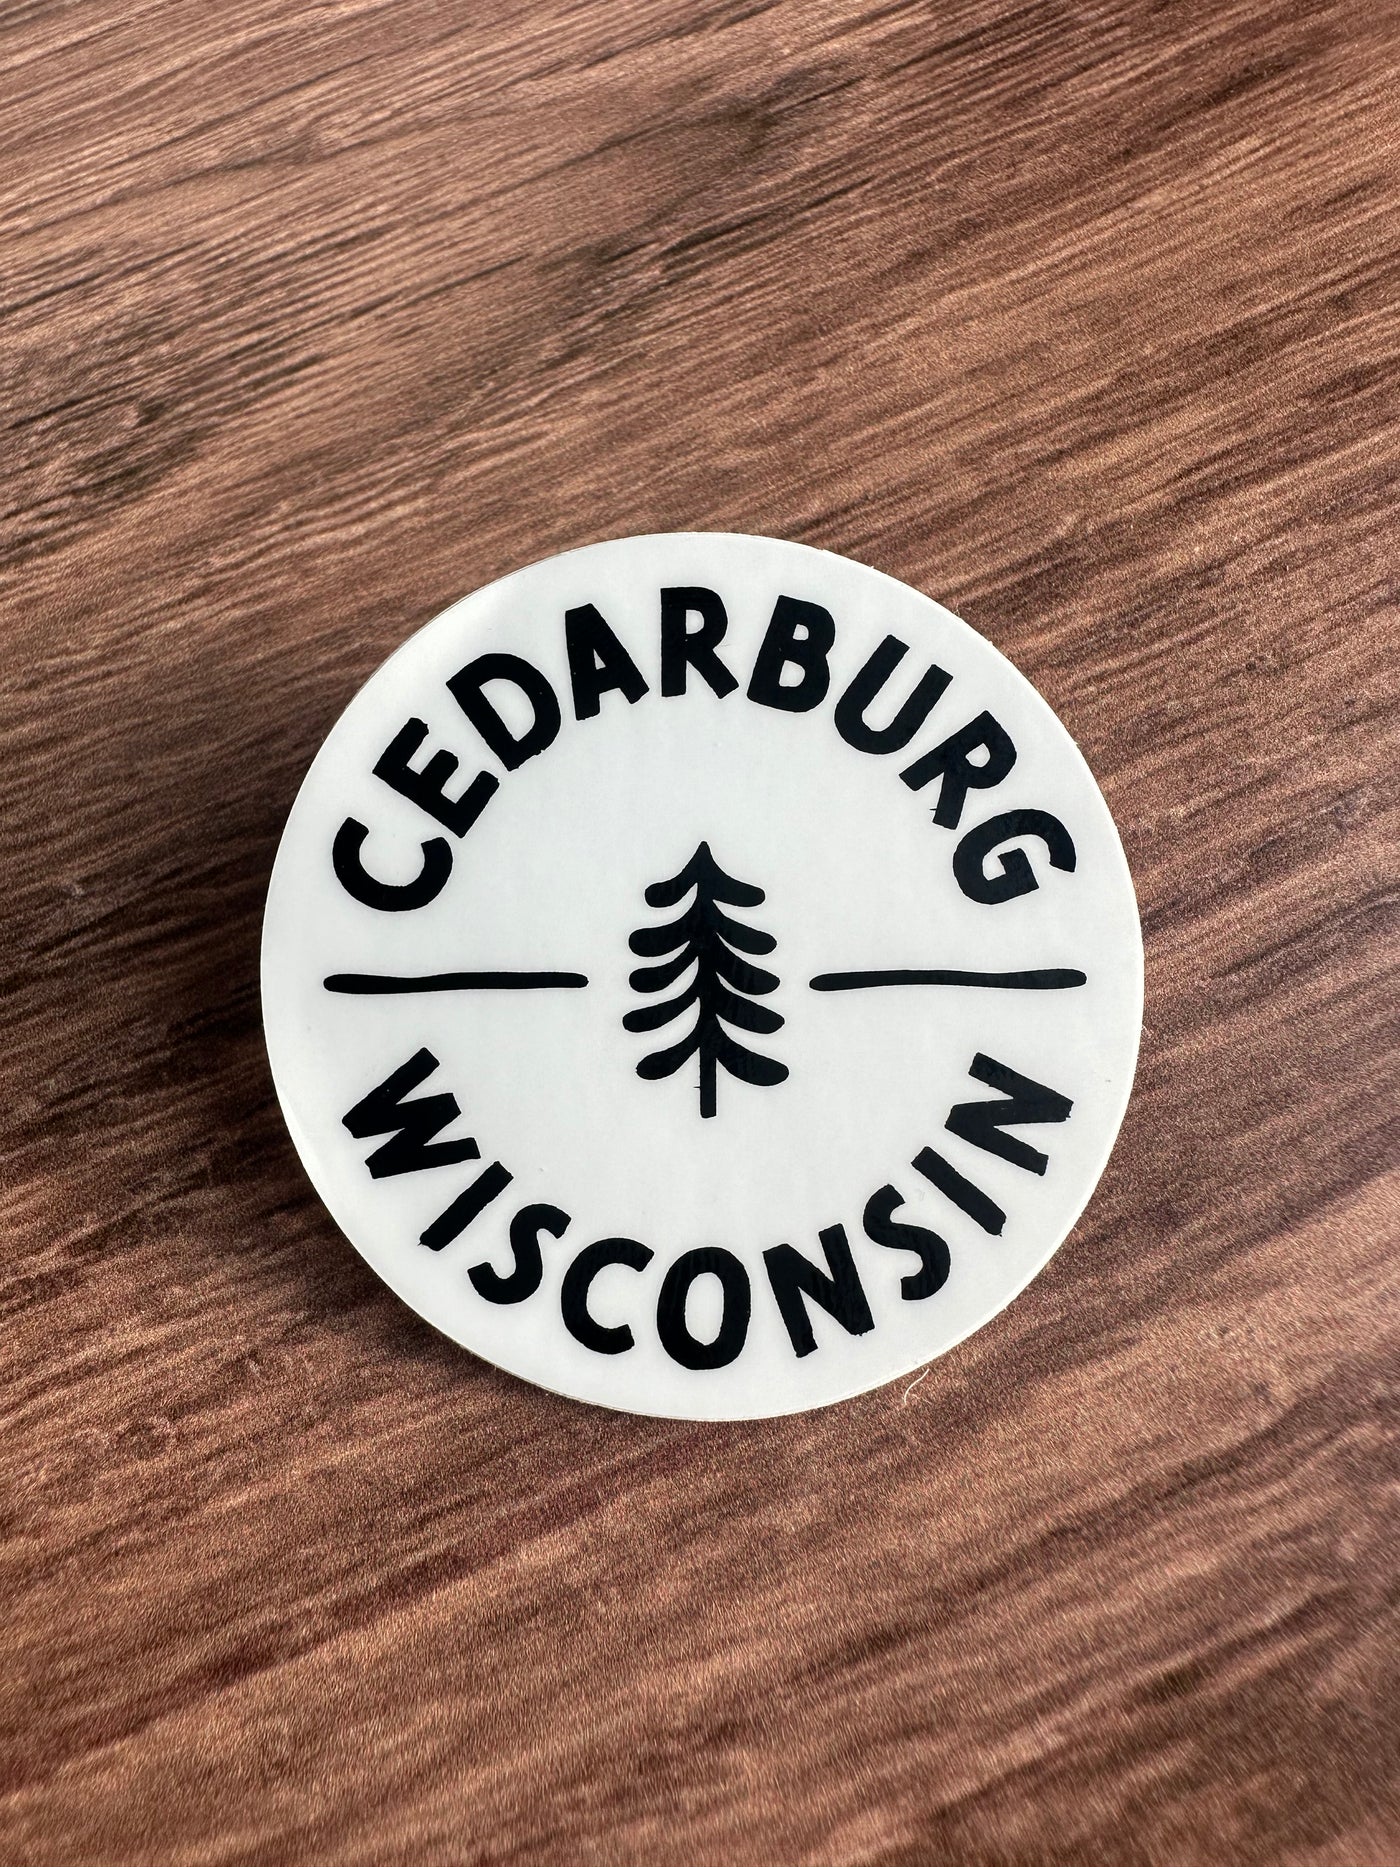 Circle Cedarburg Sticker - Local Delivery